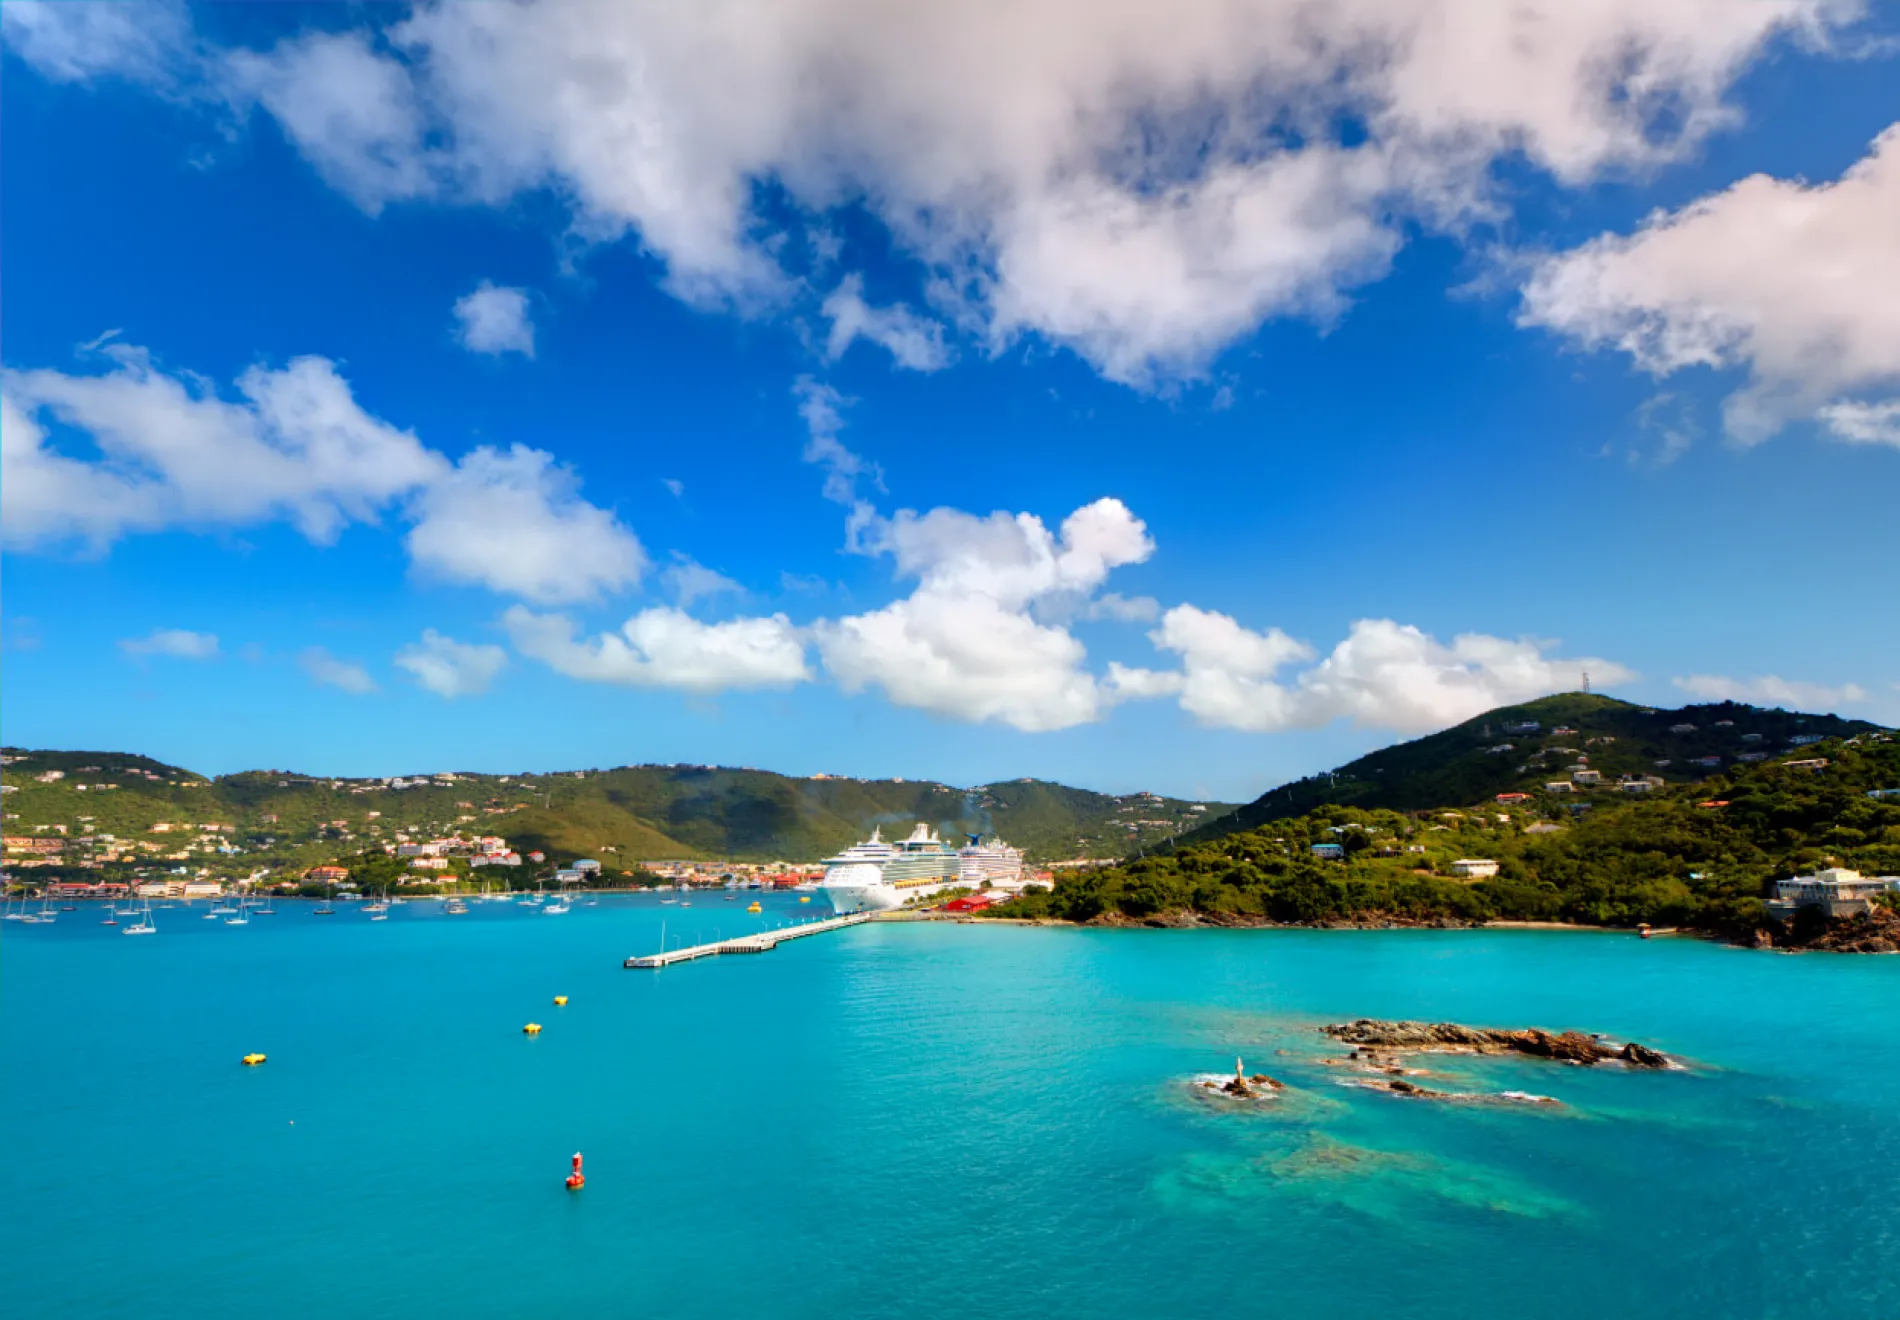 Charlotte Amalie, St. Thomas, U.S. Virgin Islands